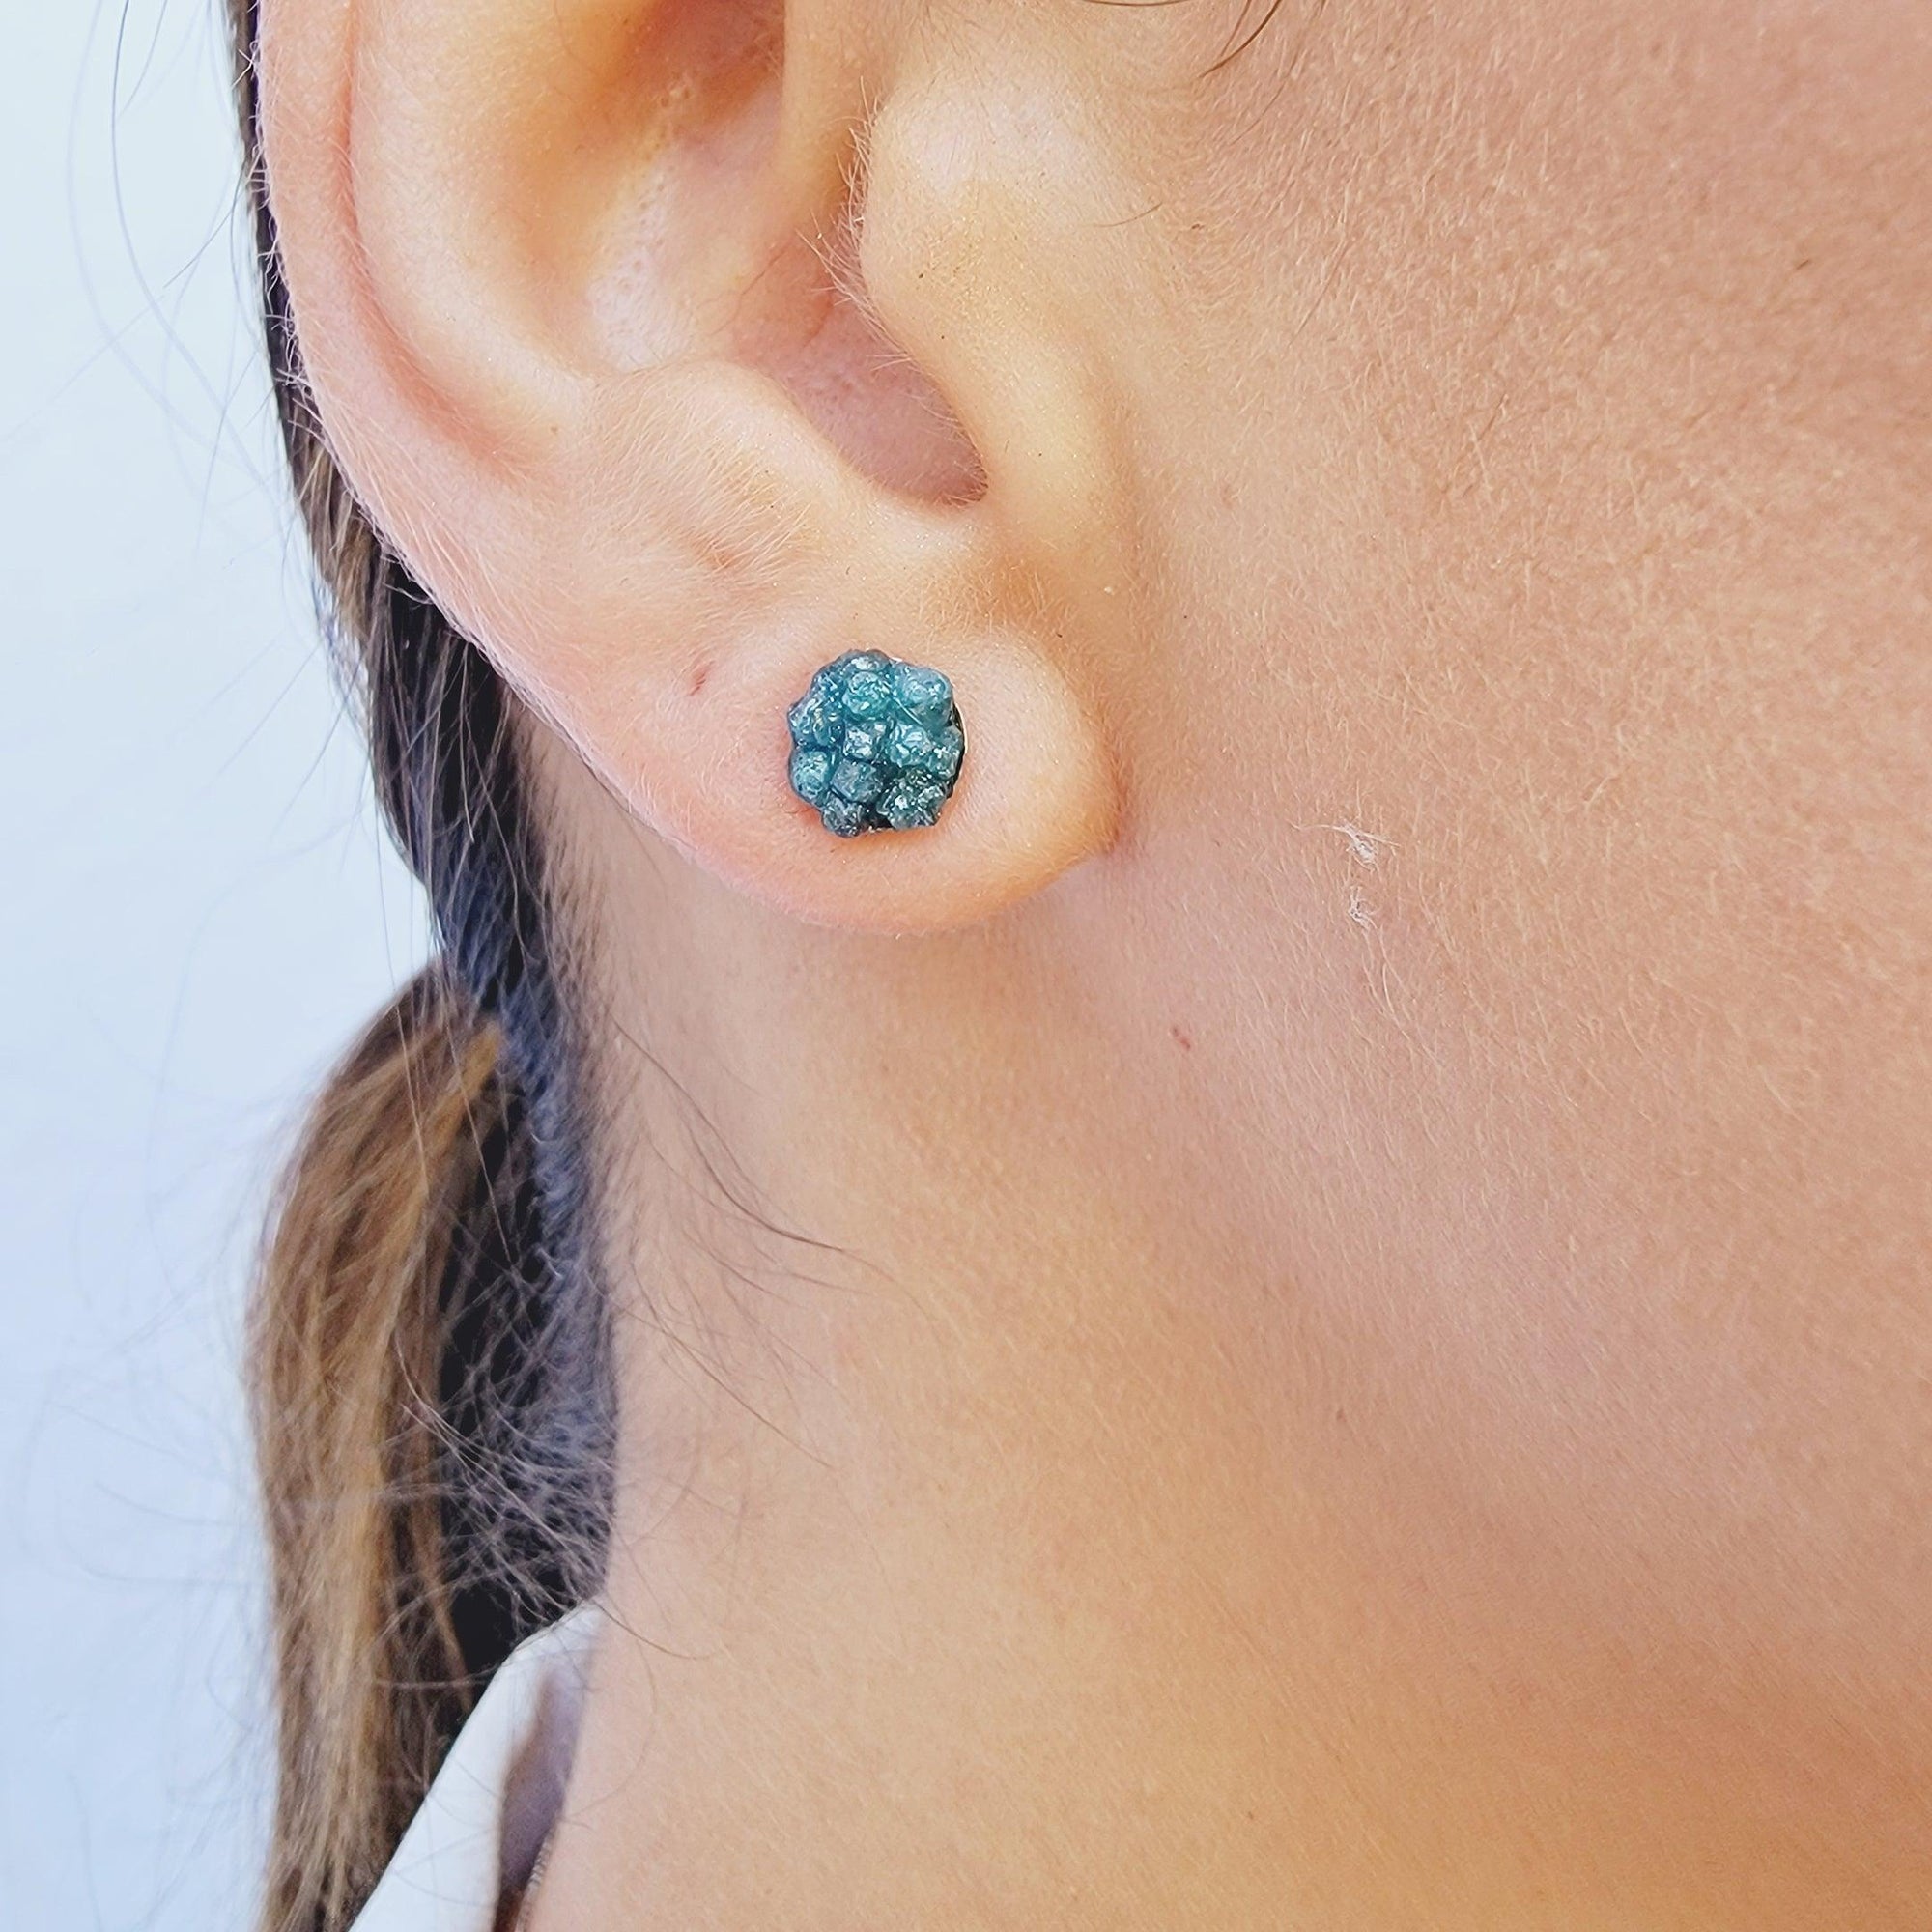 Raw Diamond Cluster Stud Earrings - Uniquelan Jewelry